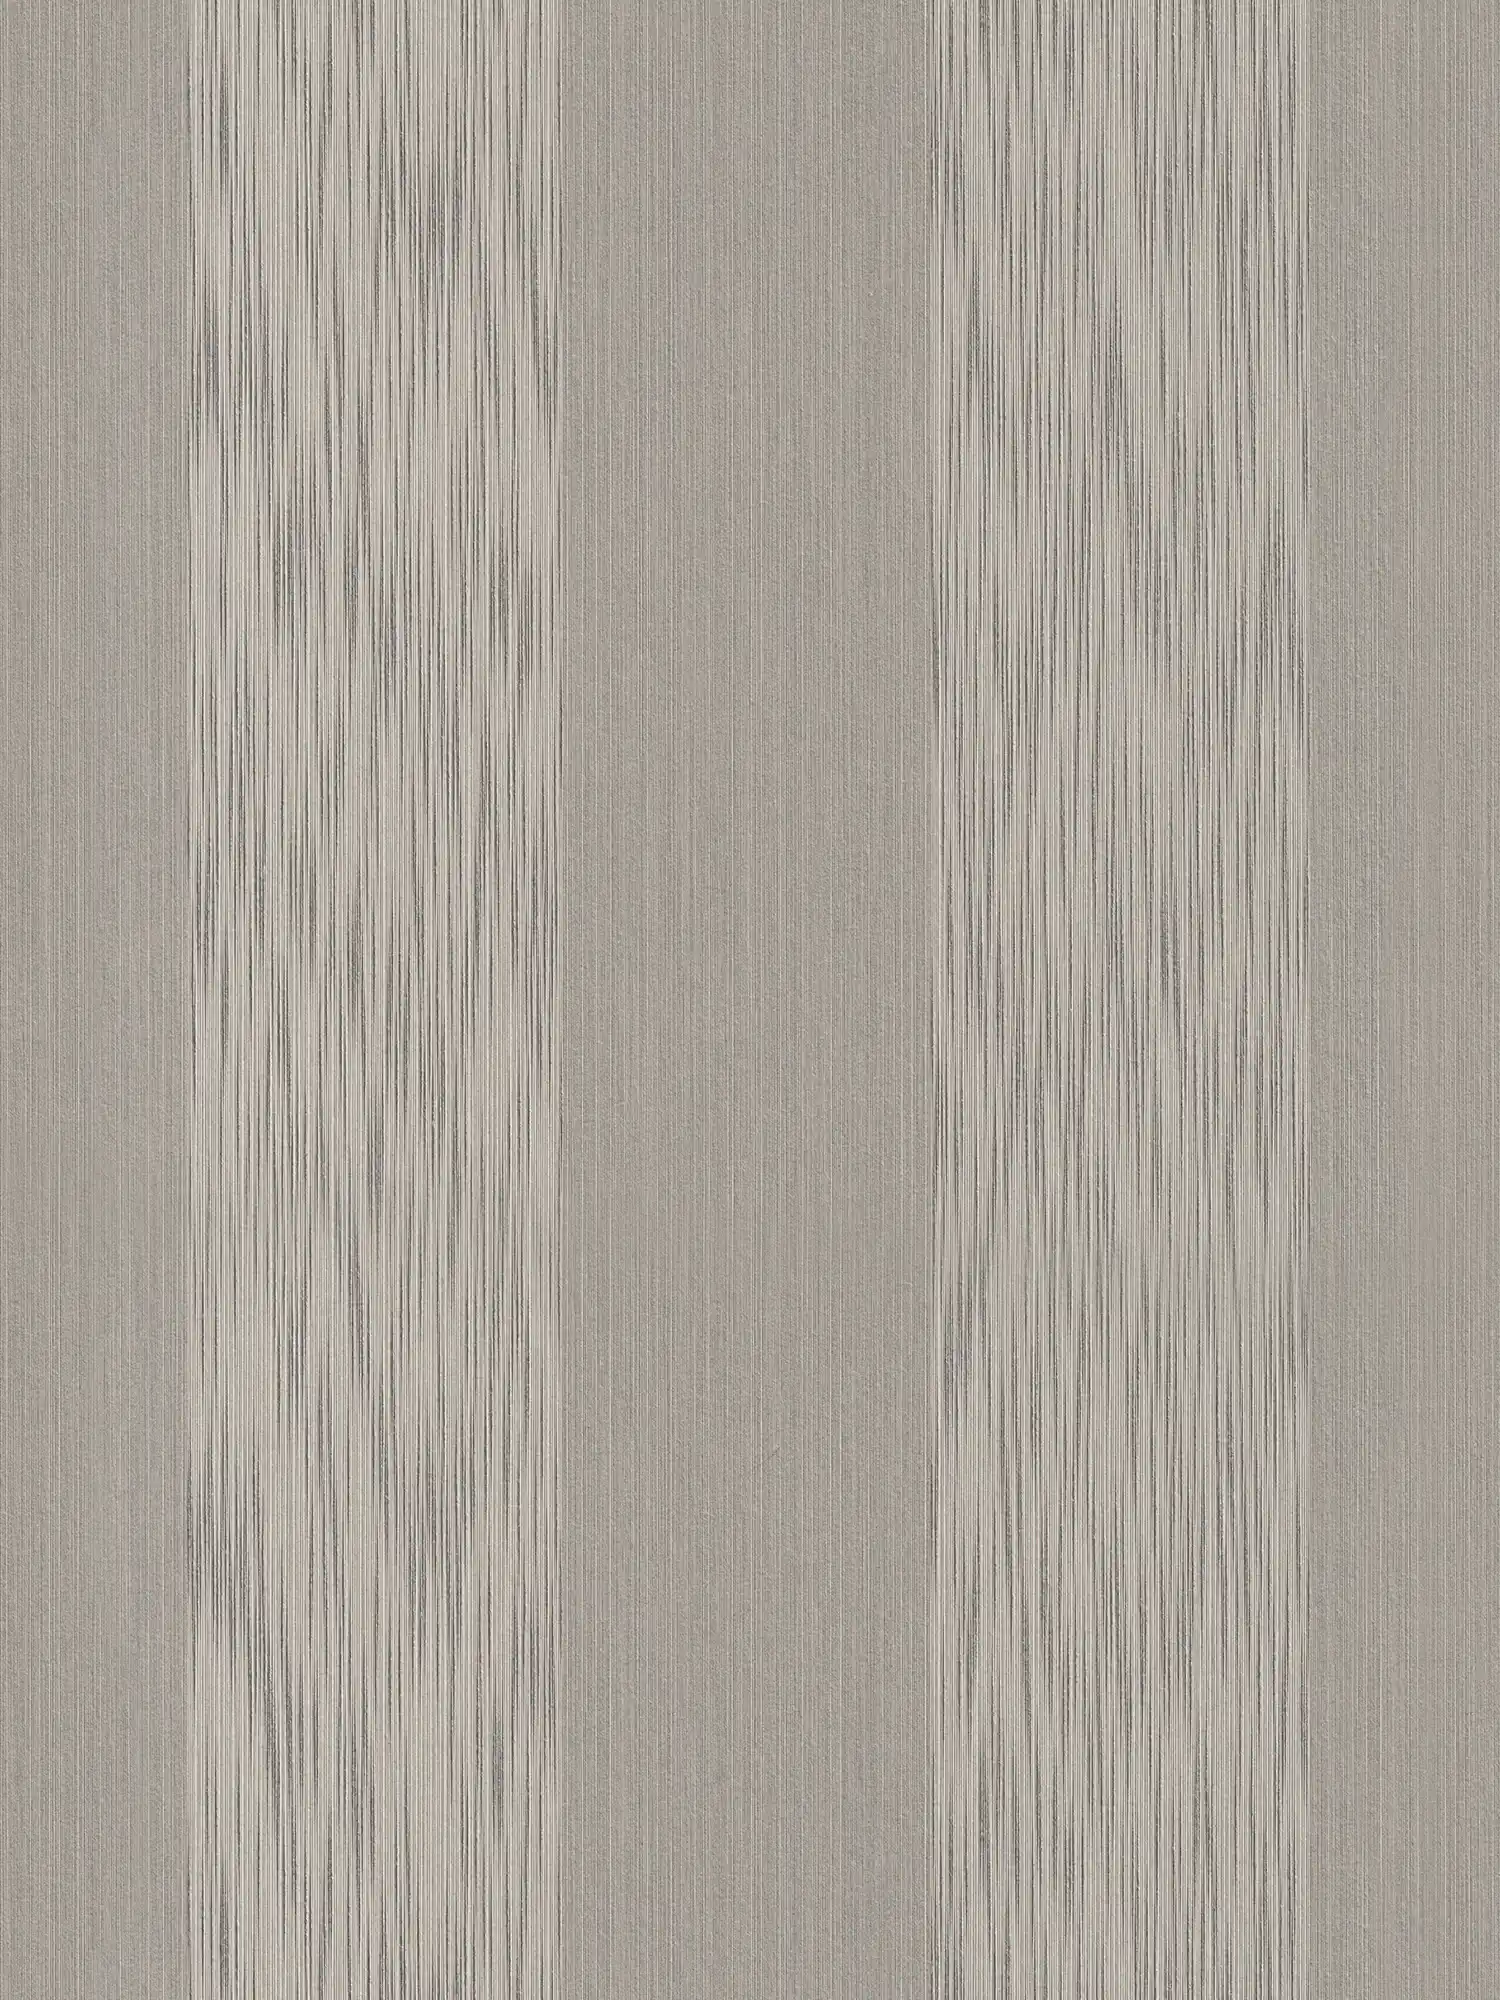 Papier peint à rayures chinées avec effet texturé - Gris
